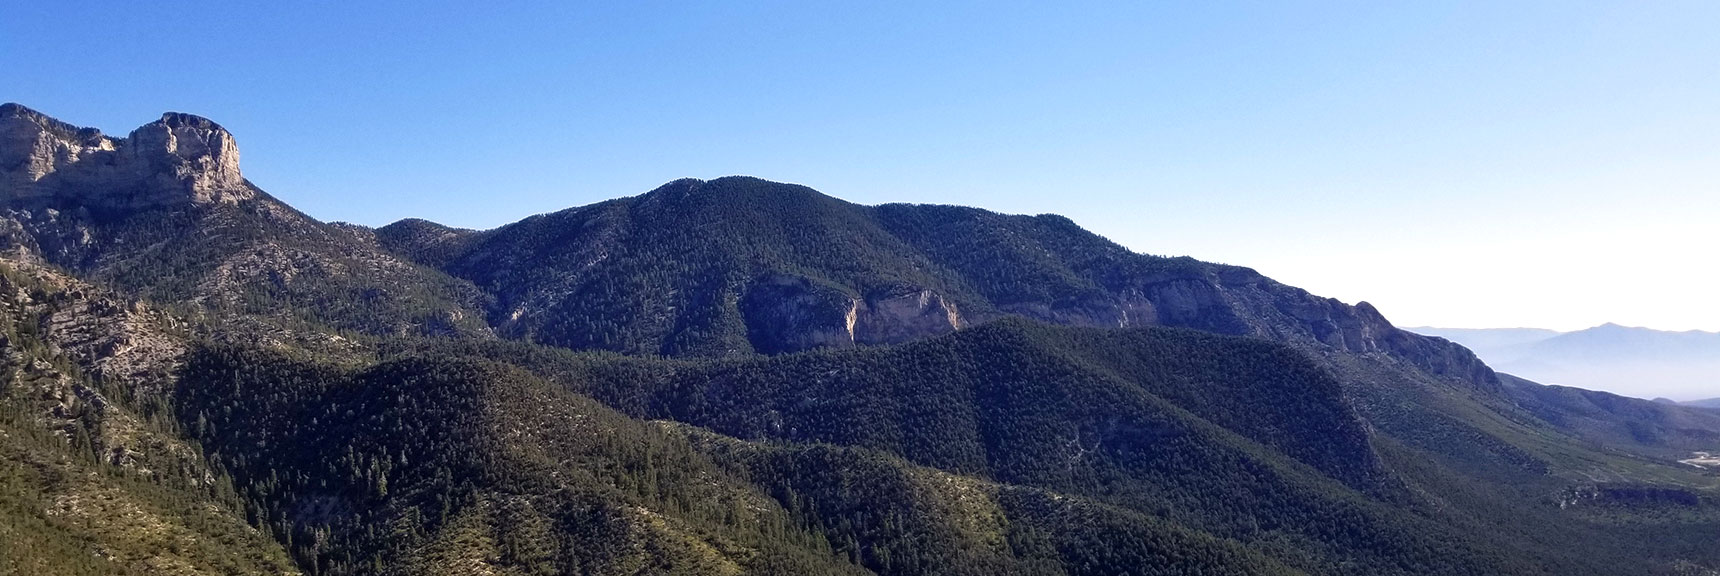 View of Fletcher Peak from Cathedral Rock Summit, Mt. Charleston Wilderness, Nevada